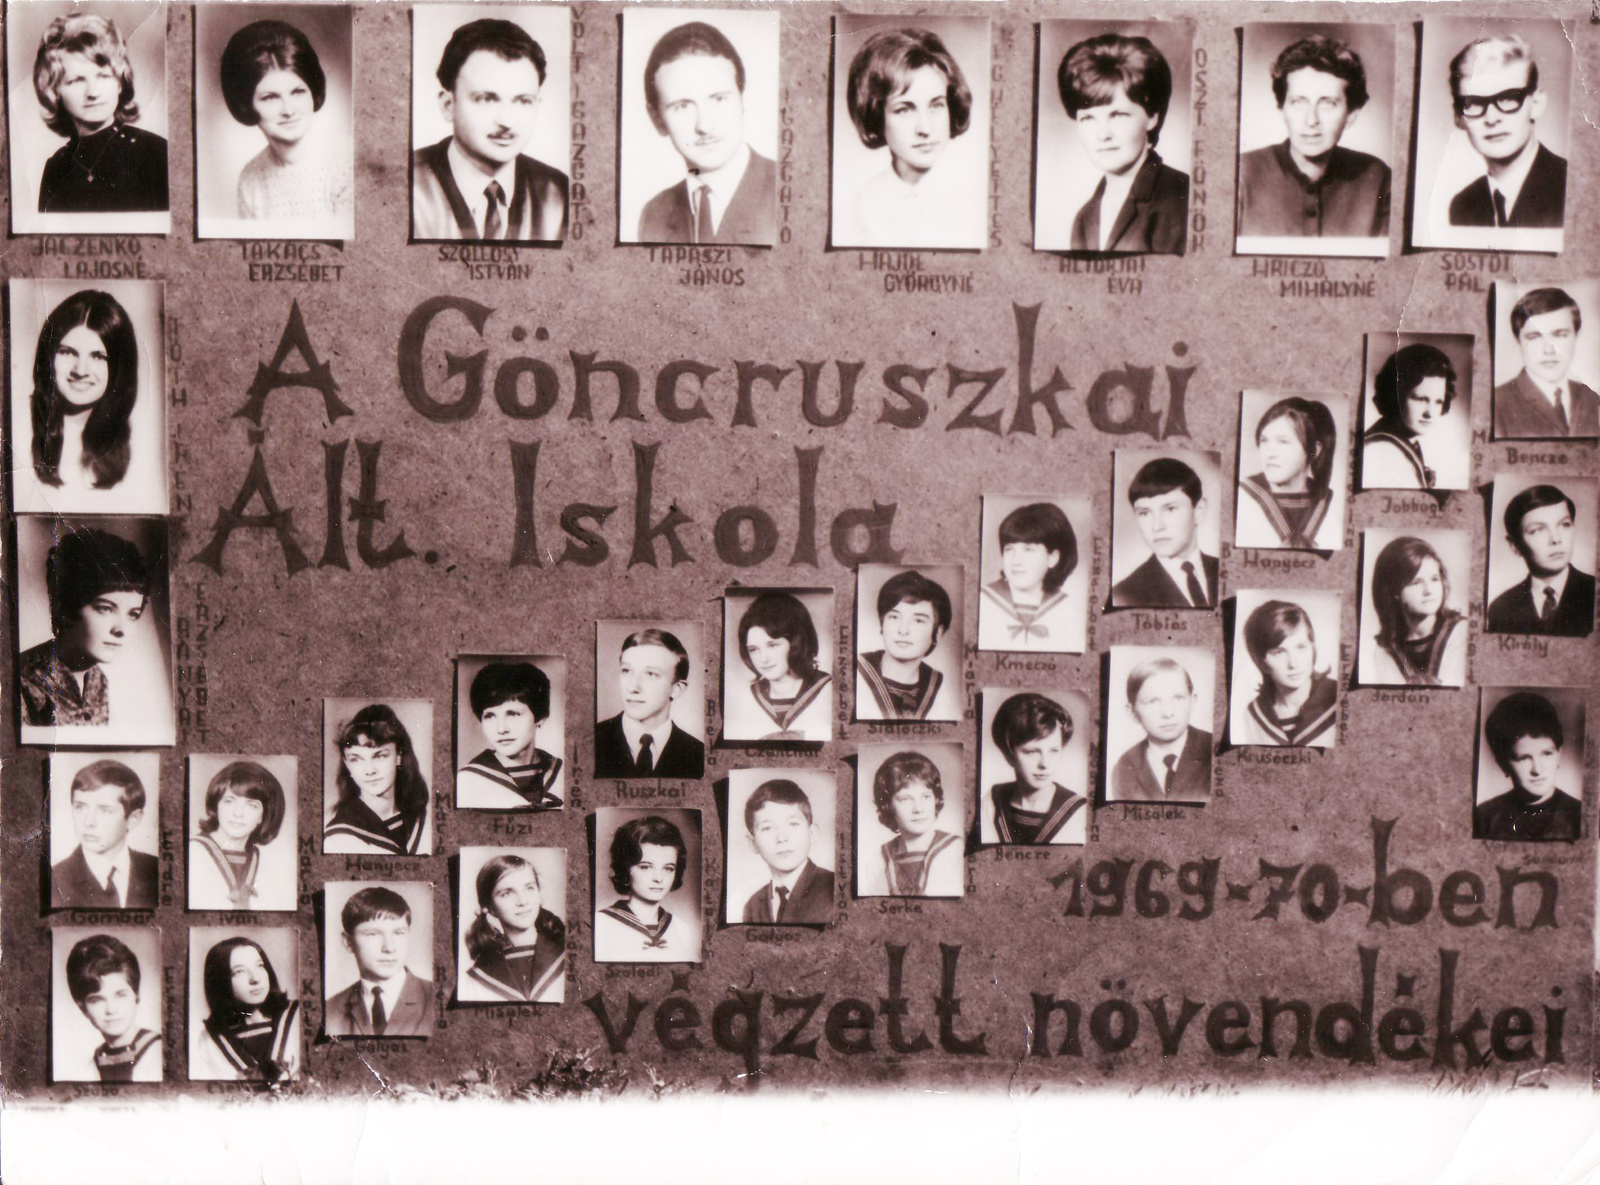 Általános Iskola Göncruszka 1970.